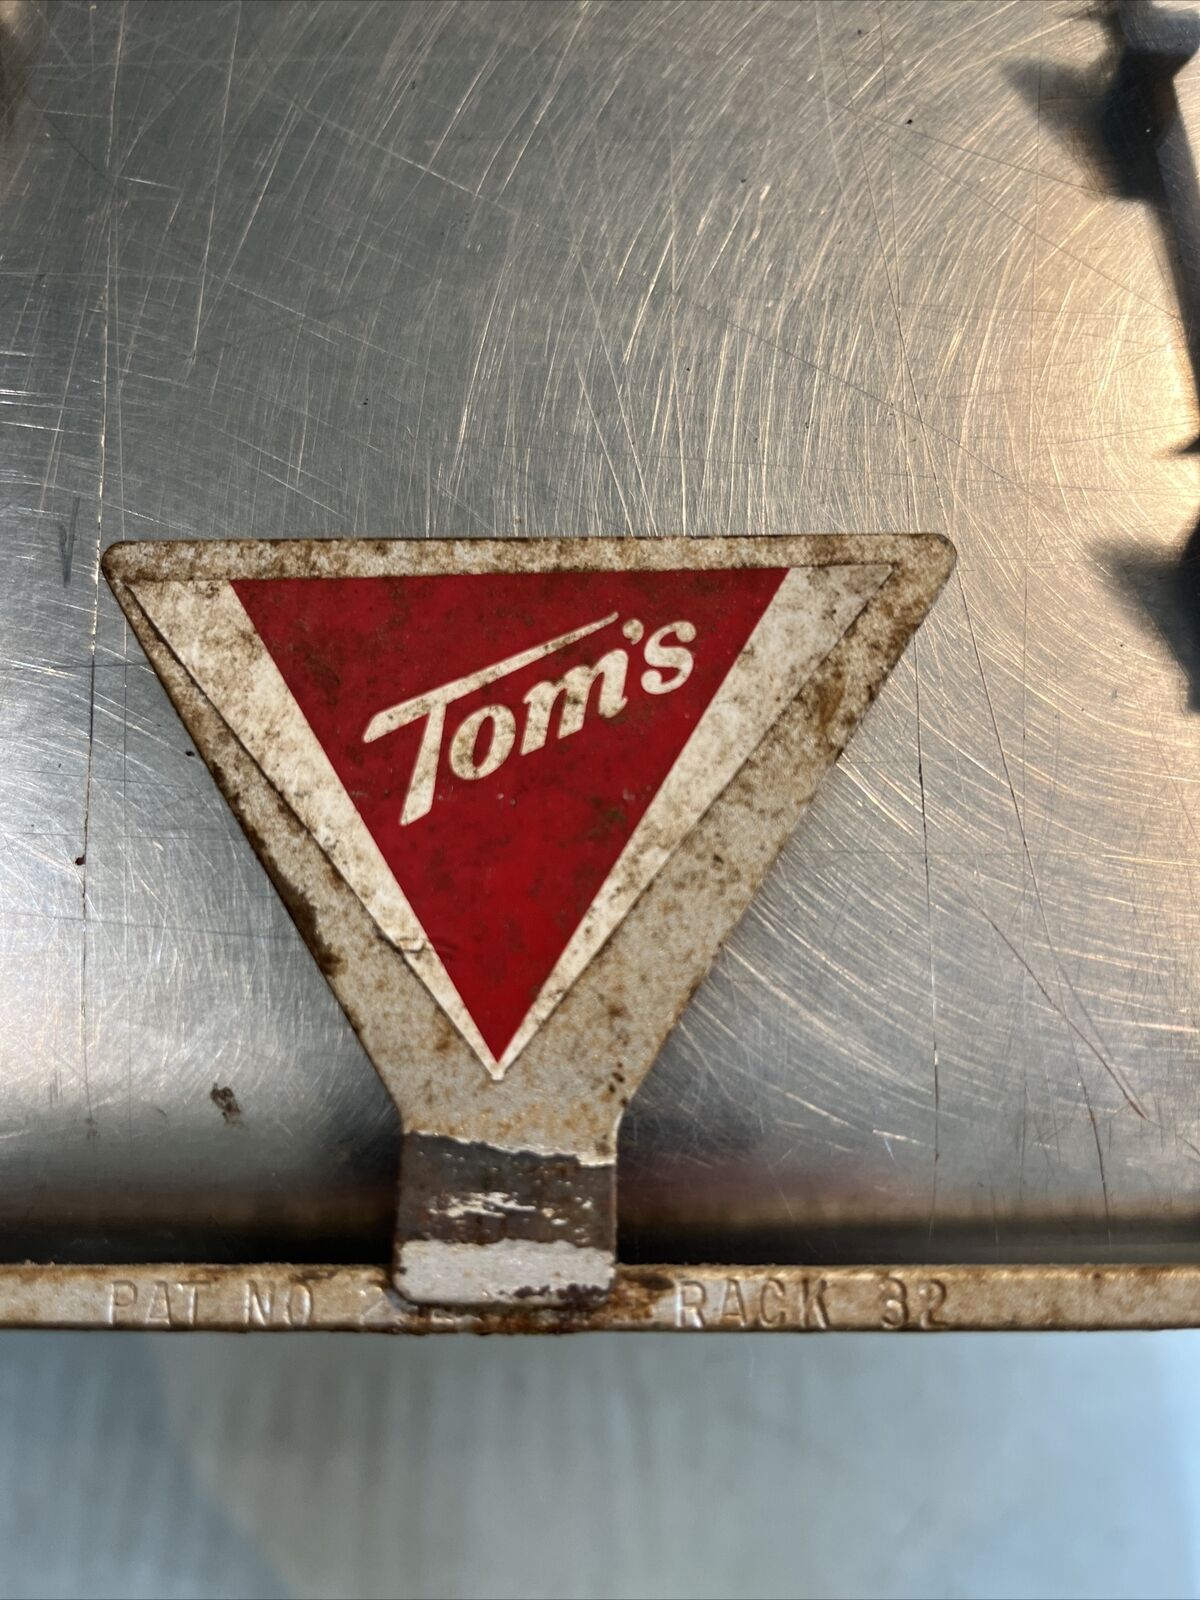 Vintage Tom’s Metal Hanging Rack Display Advertising Peanuts Chips 